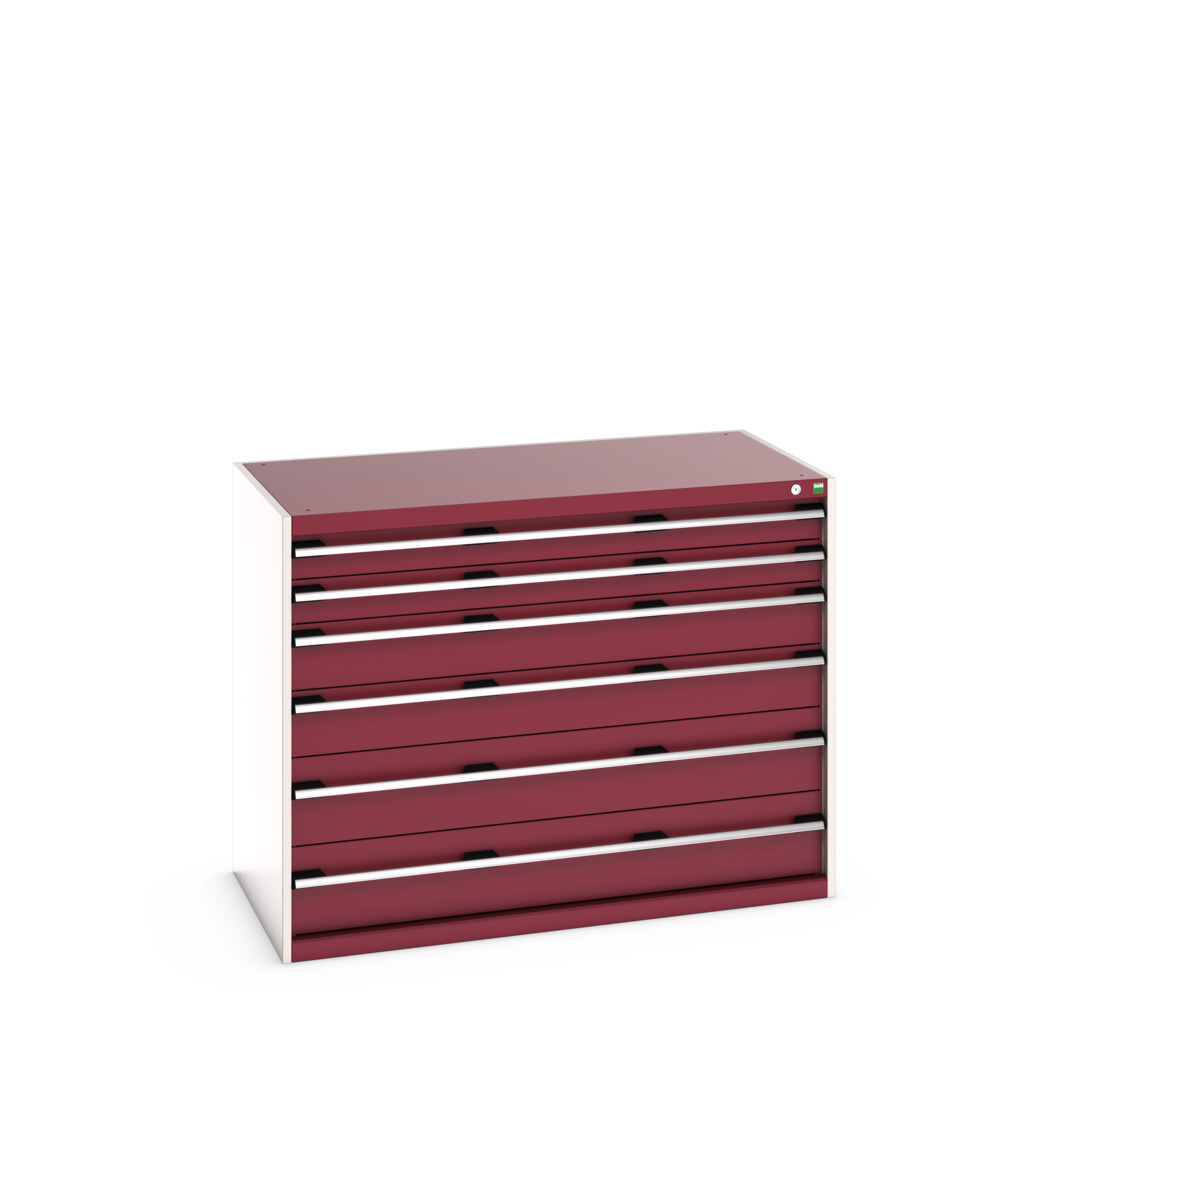 40030094.24V - cubio drawer cabinet